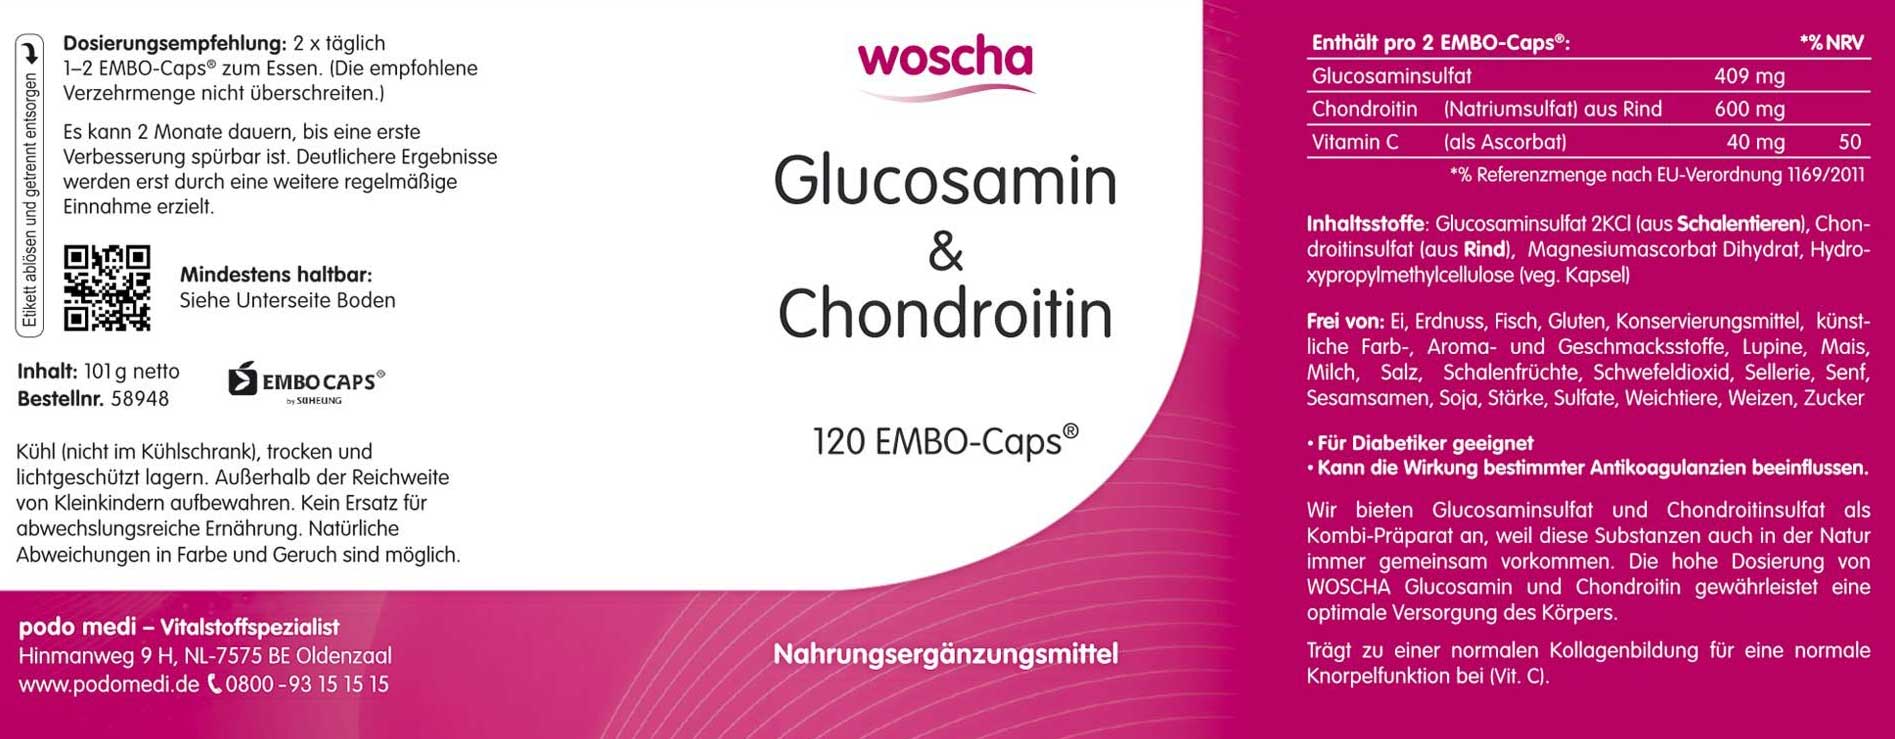 Woscha Glucosamin & Chondroitin von podo medi beinhaltet 120 Kapseln Etikett